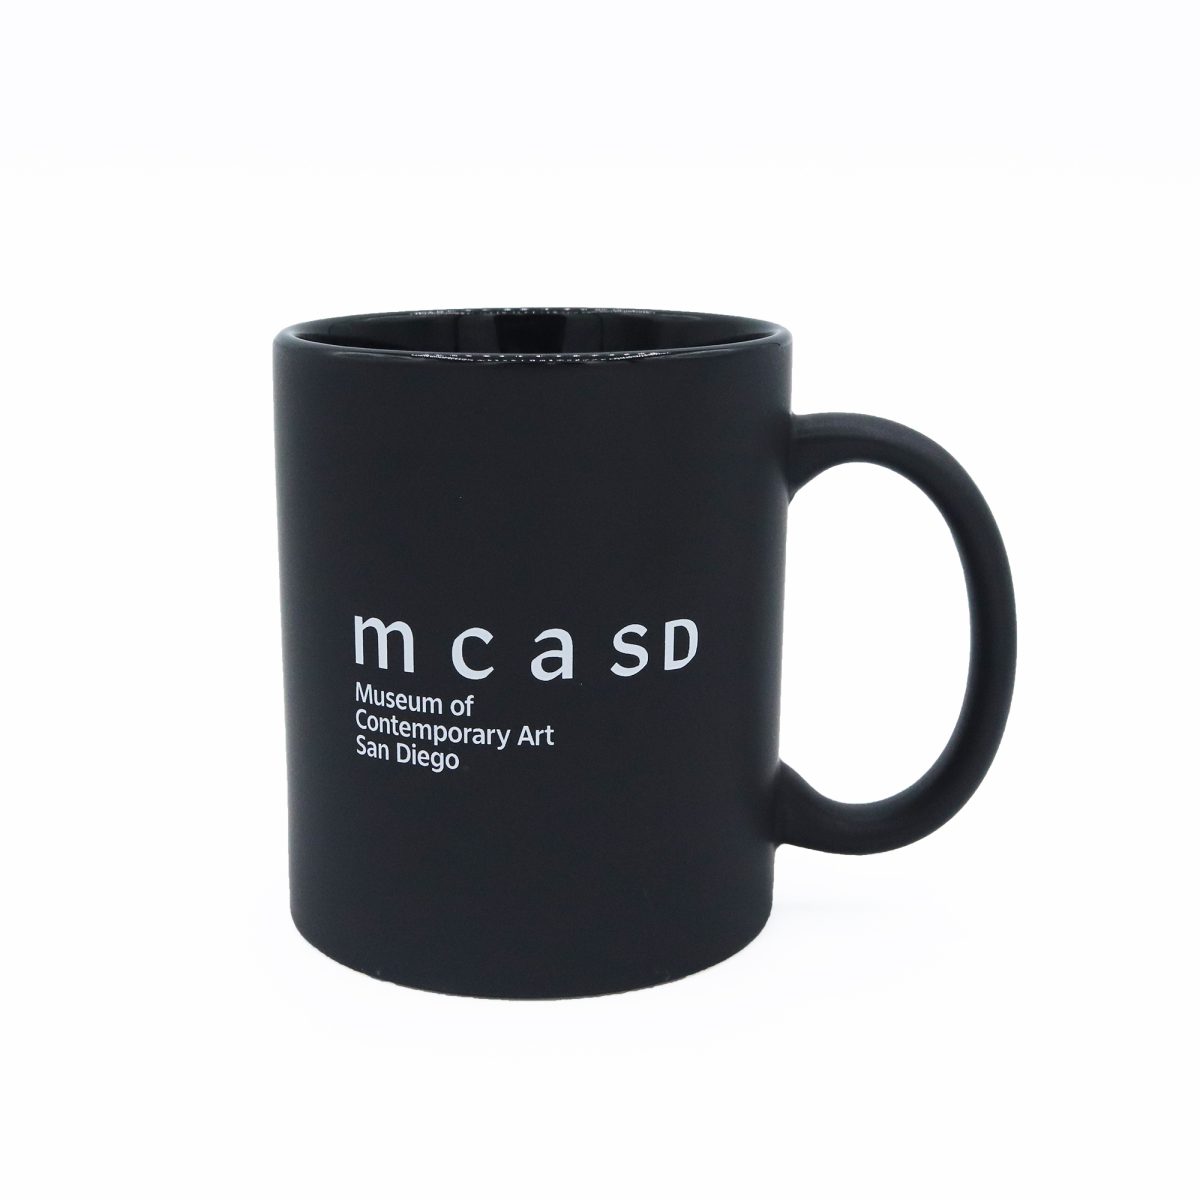 MCASD Brand Black Mug